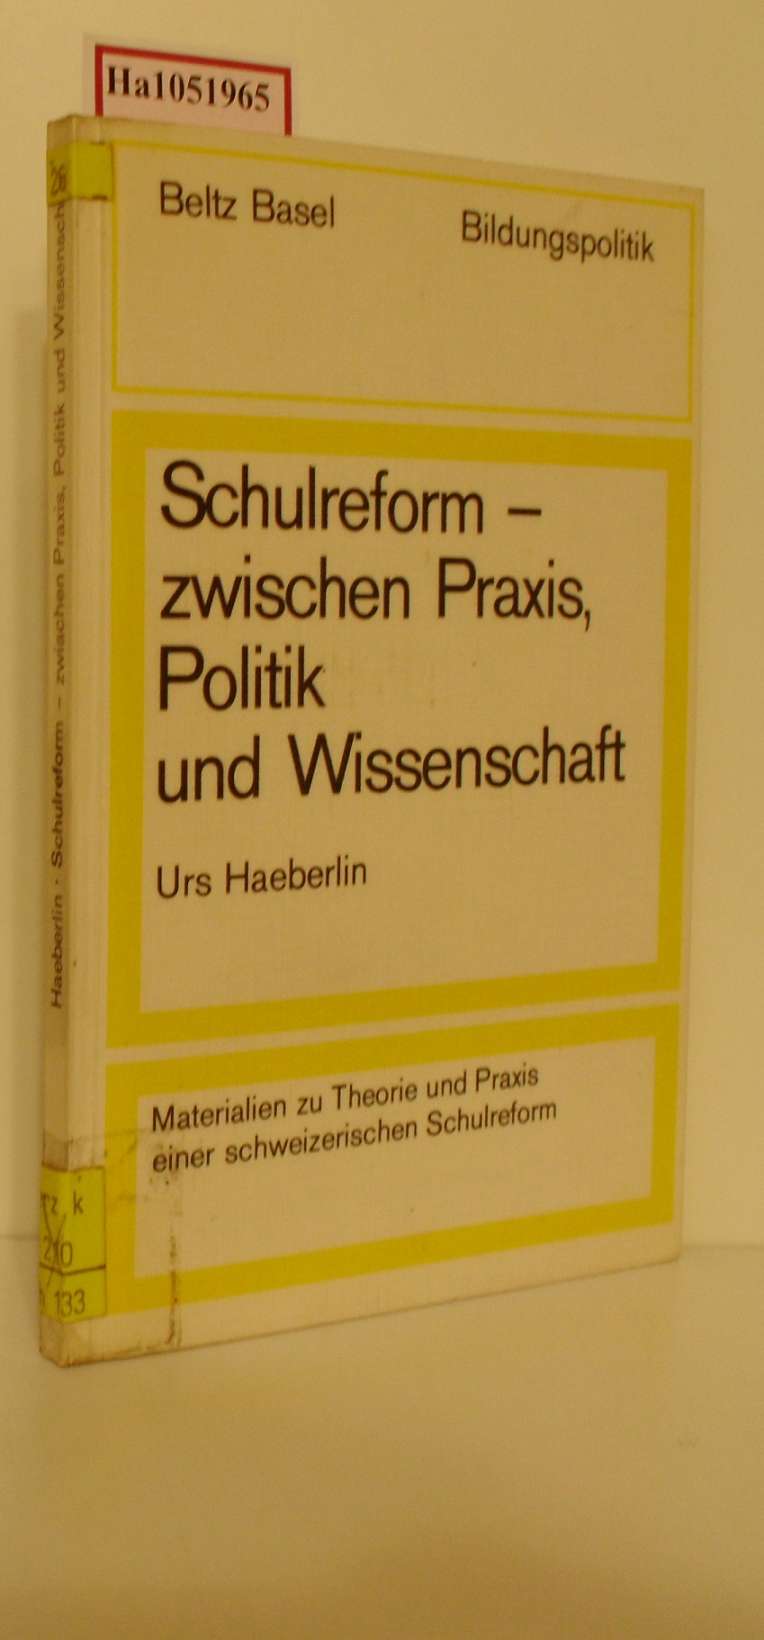 Schulreform - zwischen Praxis, Politik und Wissenschaft. Materialien zu Theorie und Praxis einer schweizerischen Schulreform. - Haeberlin, Urs